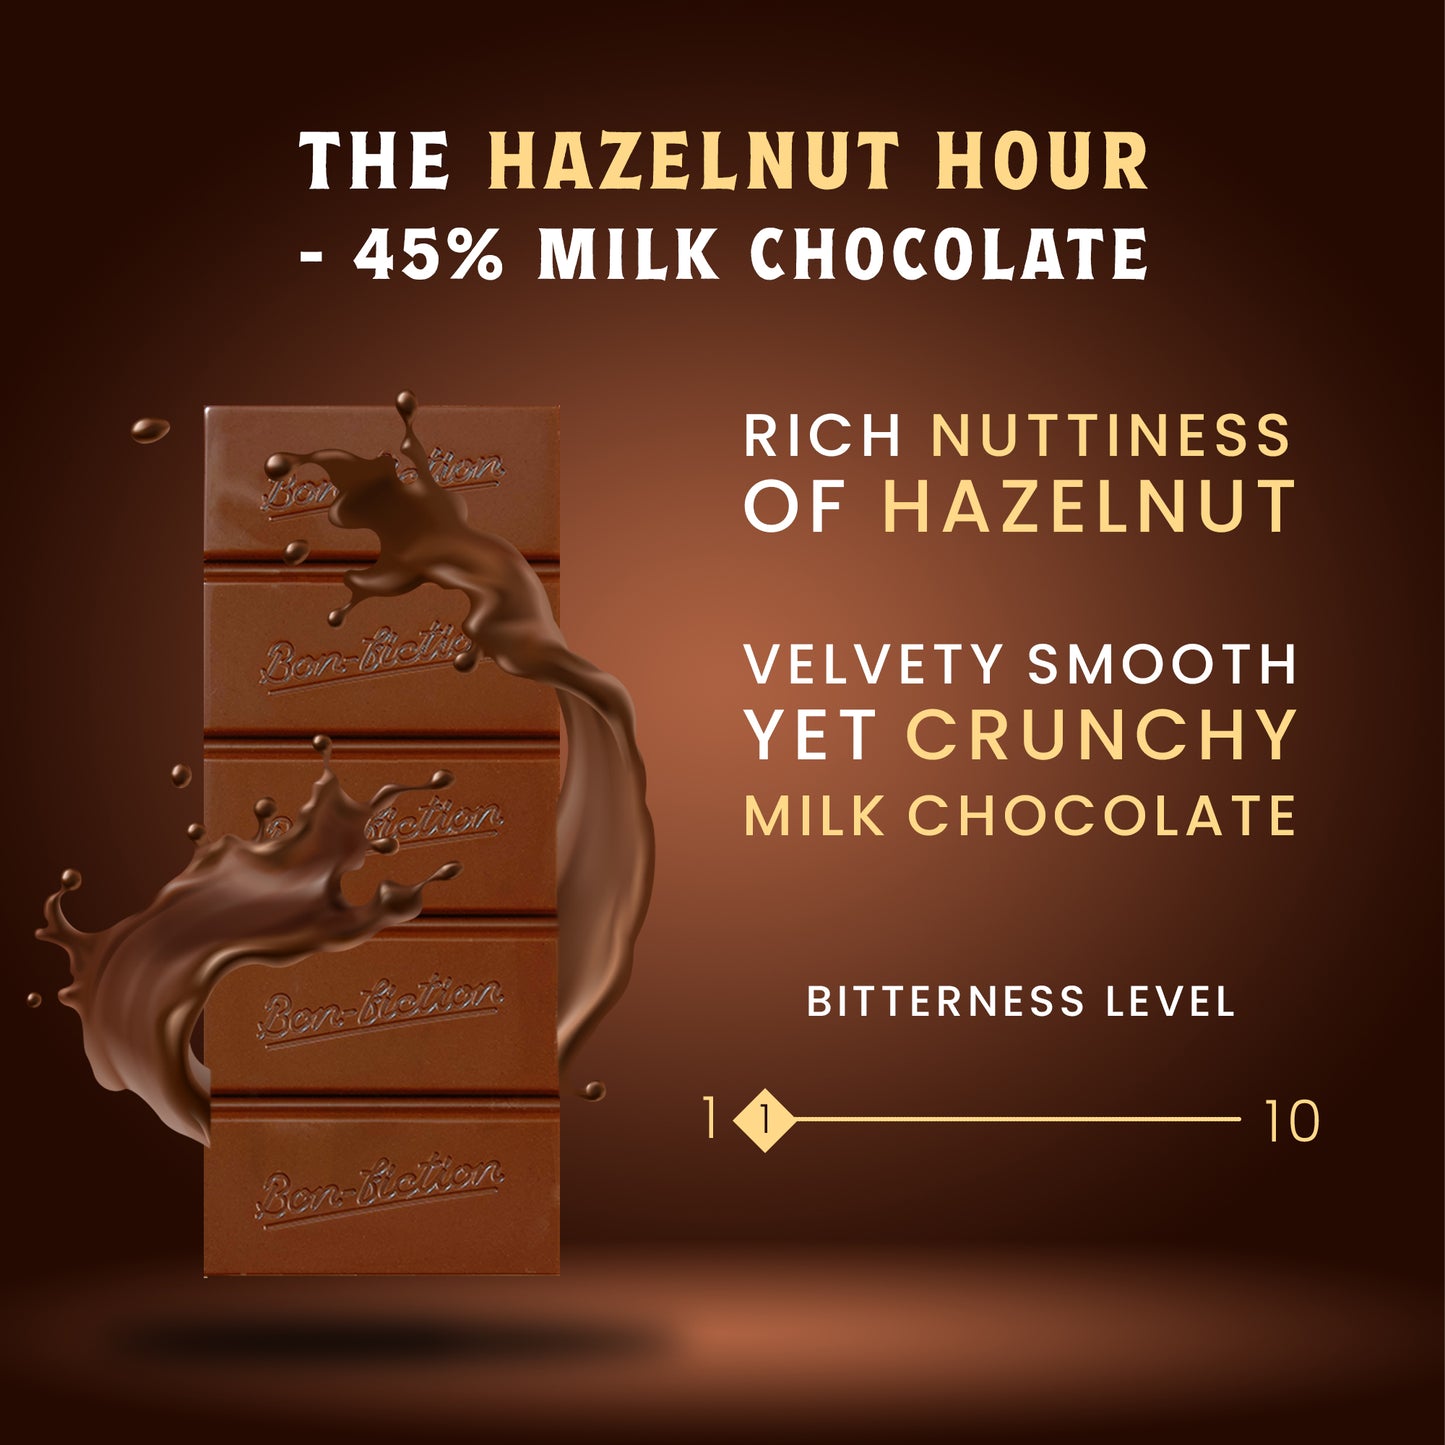 The Hazelnut Hour - 45% Milk Hazelnut Chocolate - Pack of 3